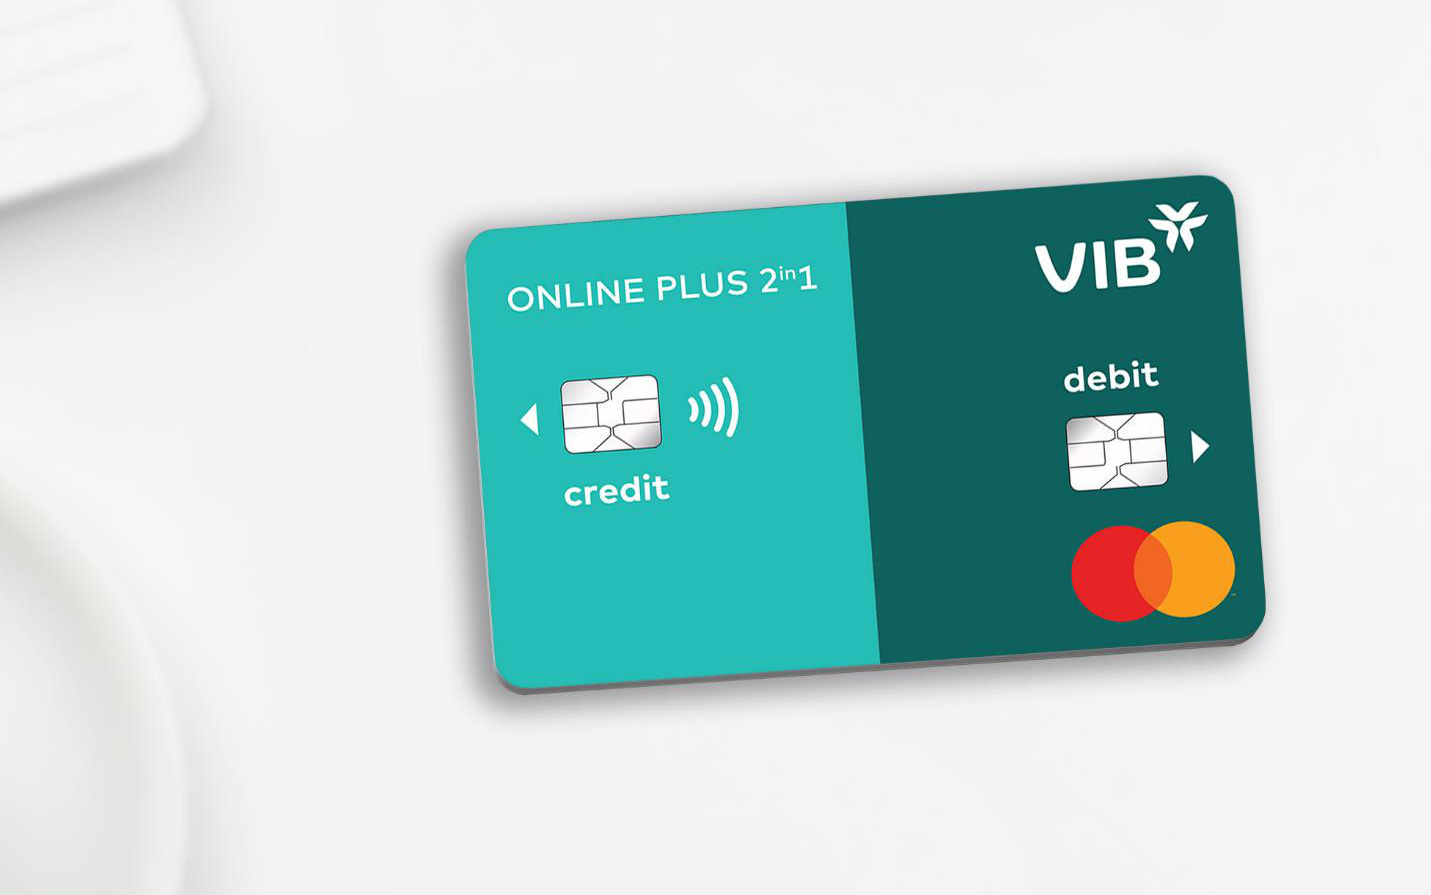 VIB ra mắt dòng thẻ Online Plus 2in1 tích hợp thẻ tín dụng và thẻ thanh toán lần đầu tiên tại Đông Nam Á